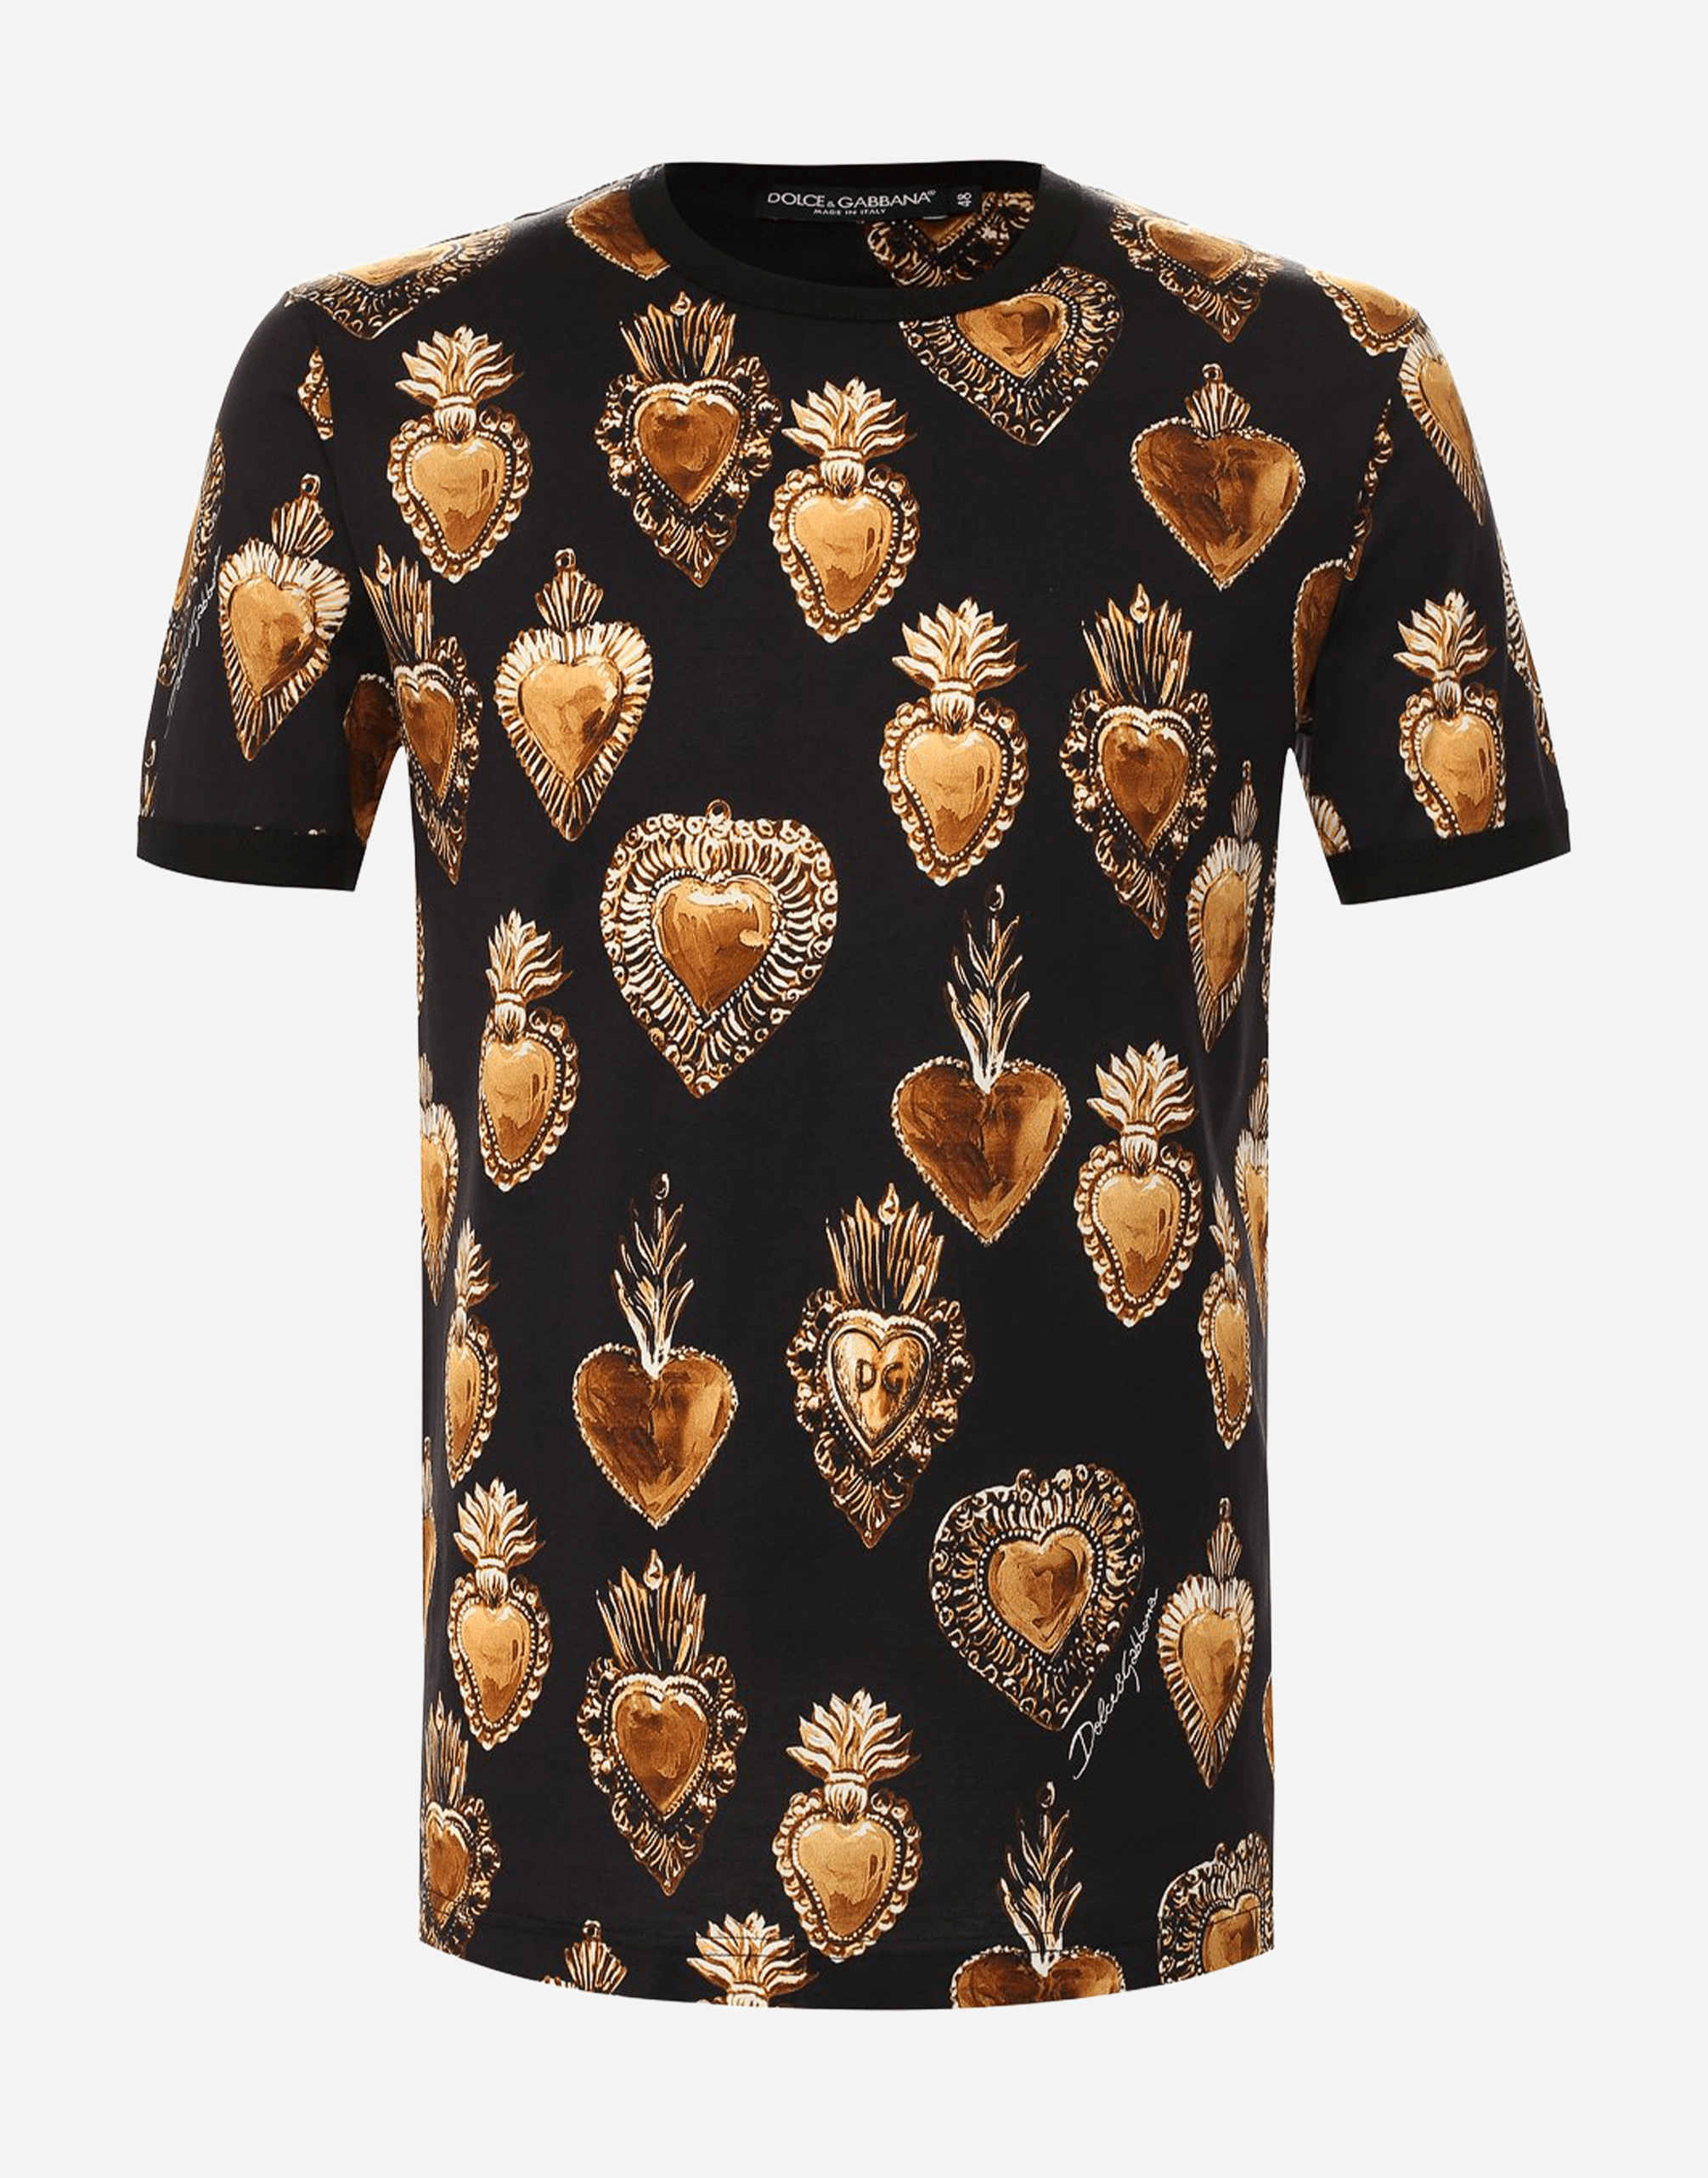 Dolce & Gabbana Sacred Heart Print Cotton T-Shirt